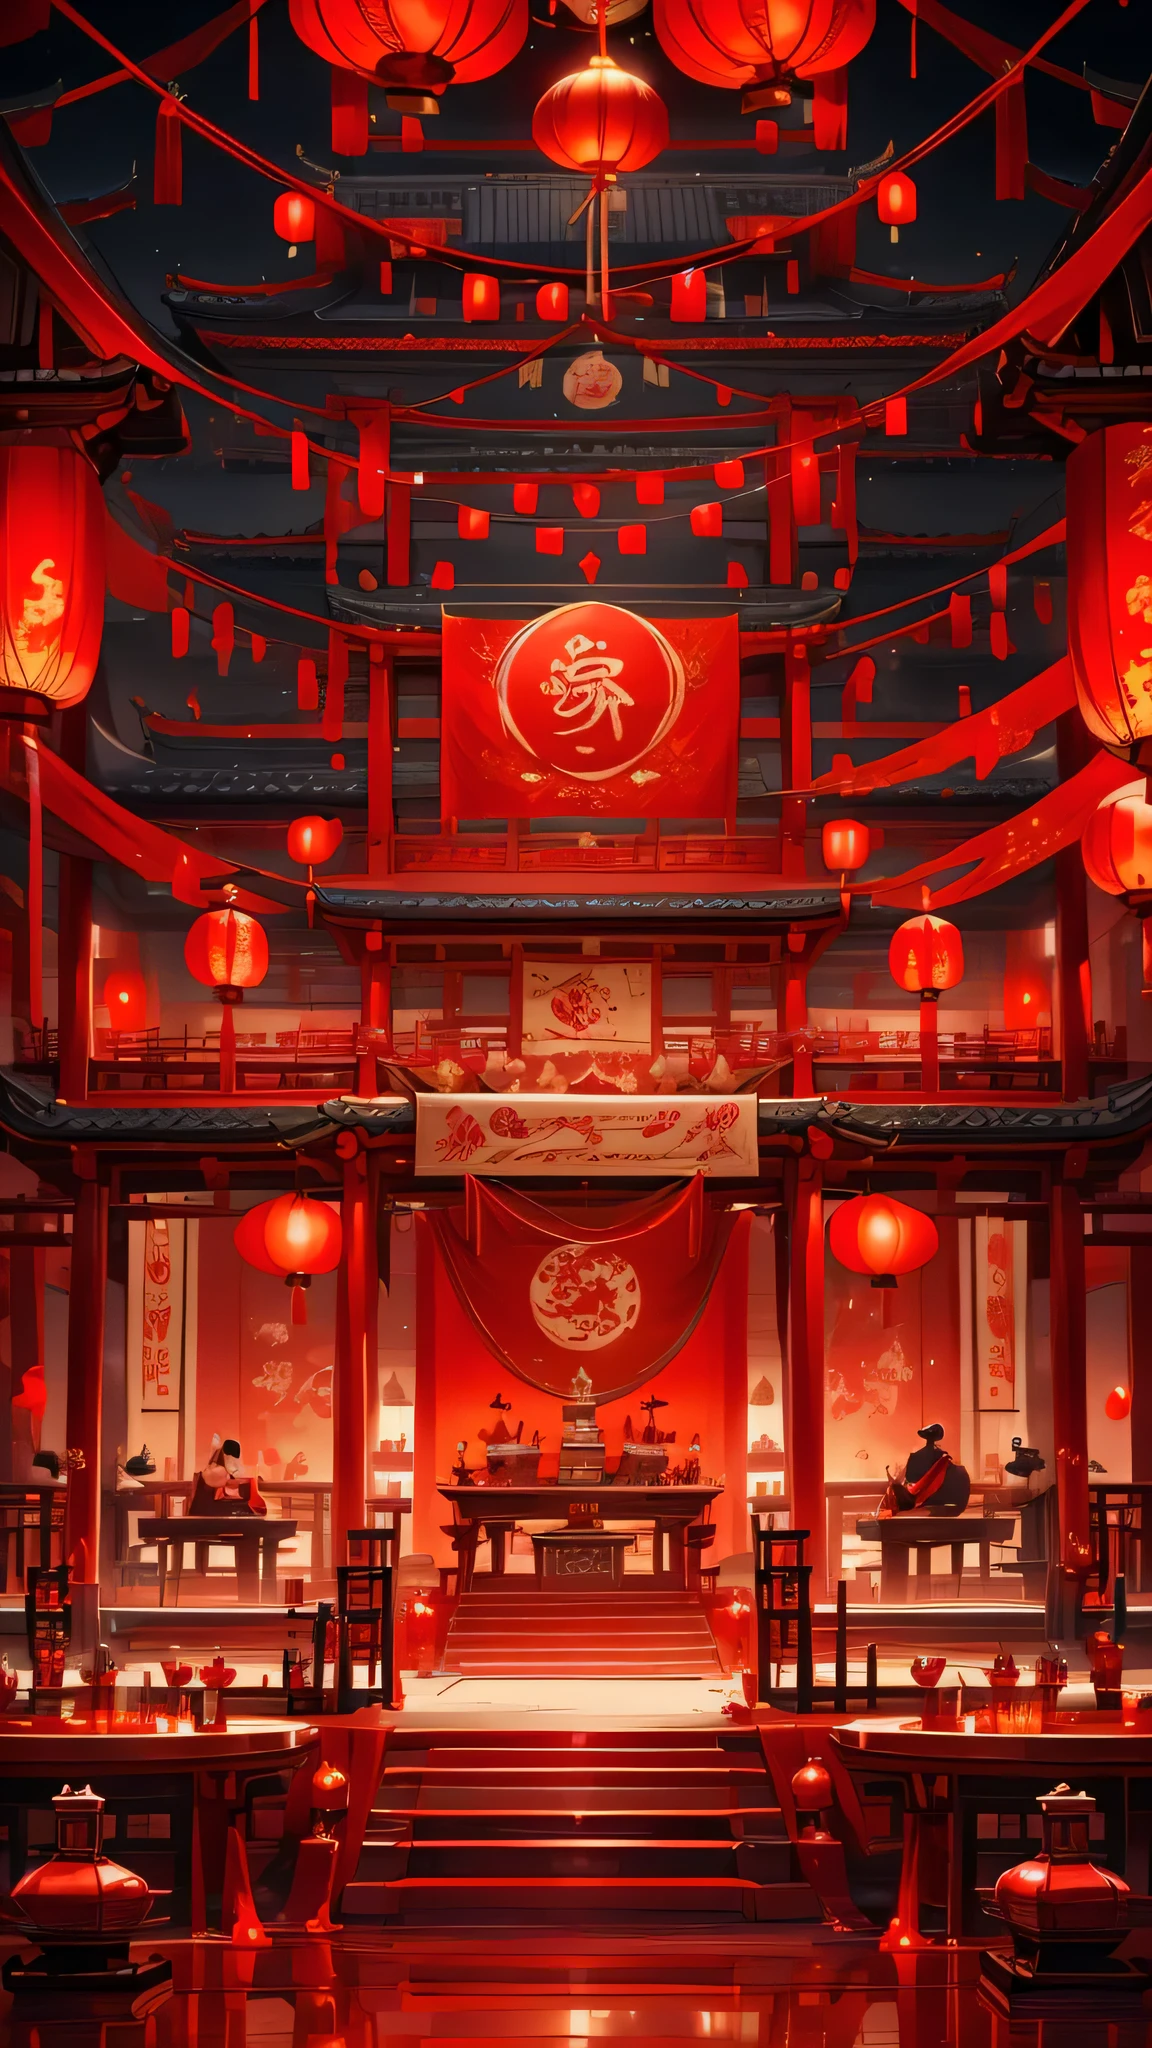 人民元， 赤 Wedding, テーブル, 中国の都市 , トンブランプ ， Quixel Megascans レンダリング , 高いディテール , 8k，赤いランタンは言葉を失う，赤いリボンが垂れ下がっている， 赤，お祝いの，誰でもない，赤 decoration on background，赤，ピクサー, 魅力的, 漫画風，ビジネスポスター，周りには飾りがあります，幸せ,